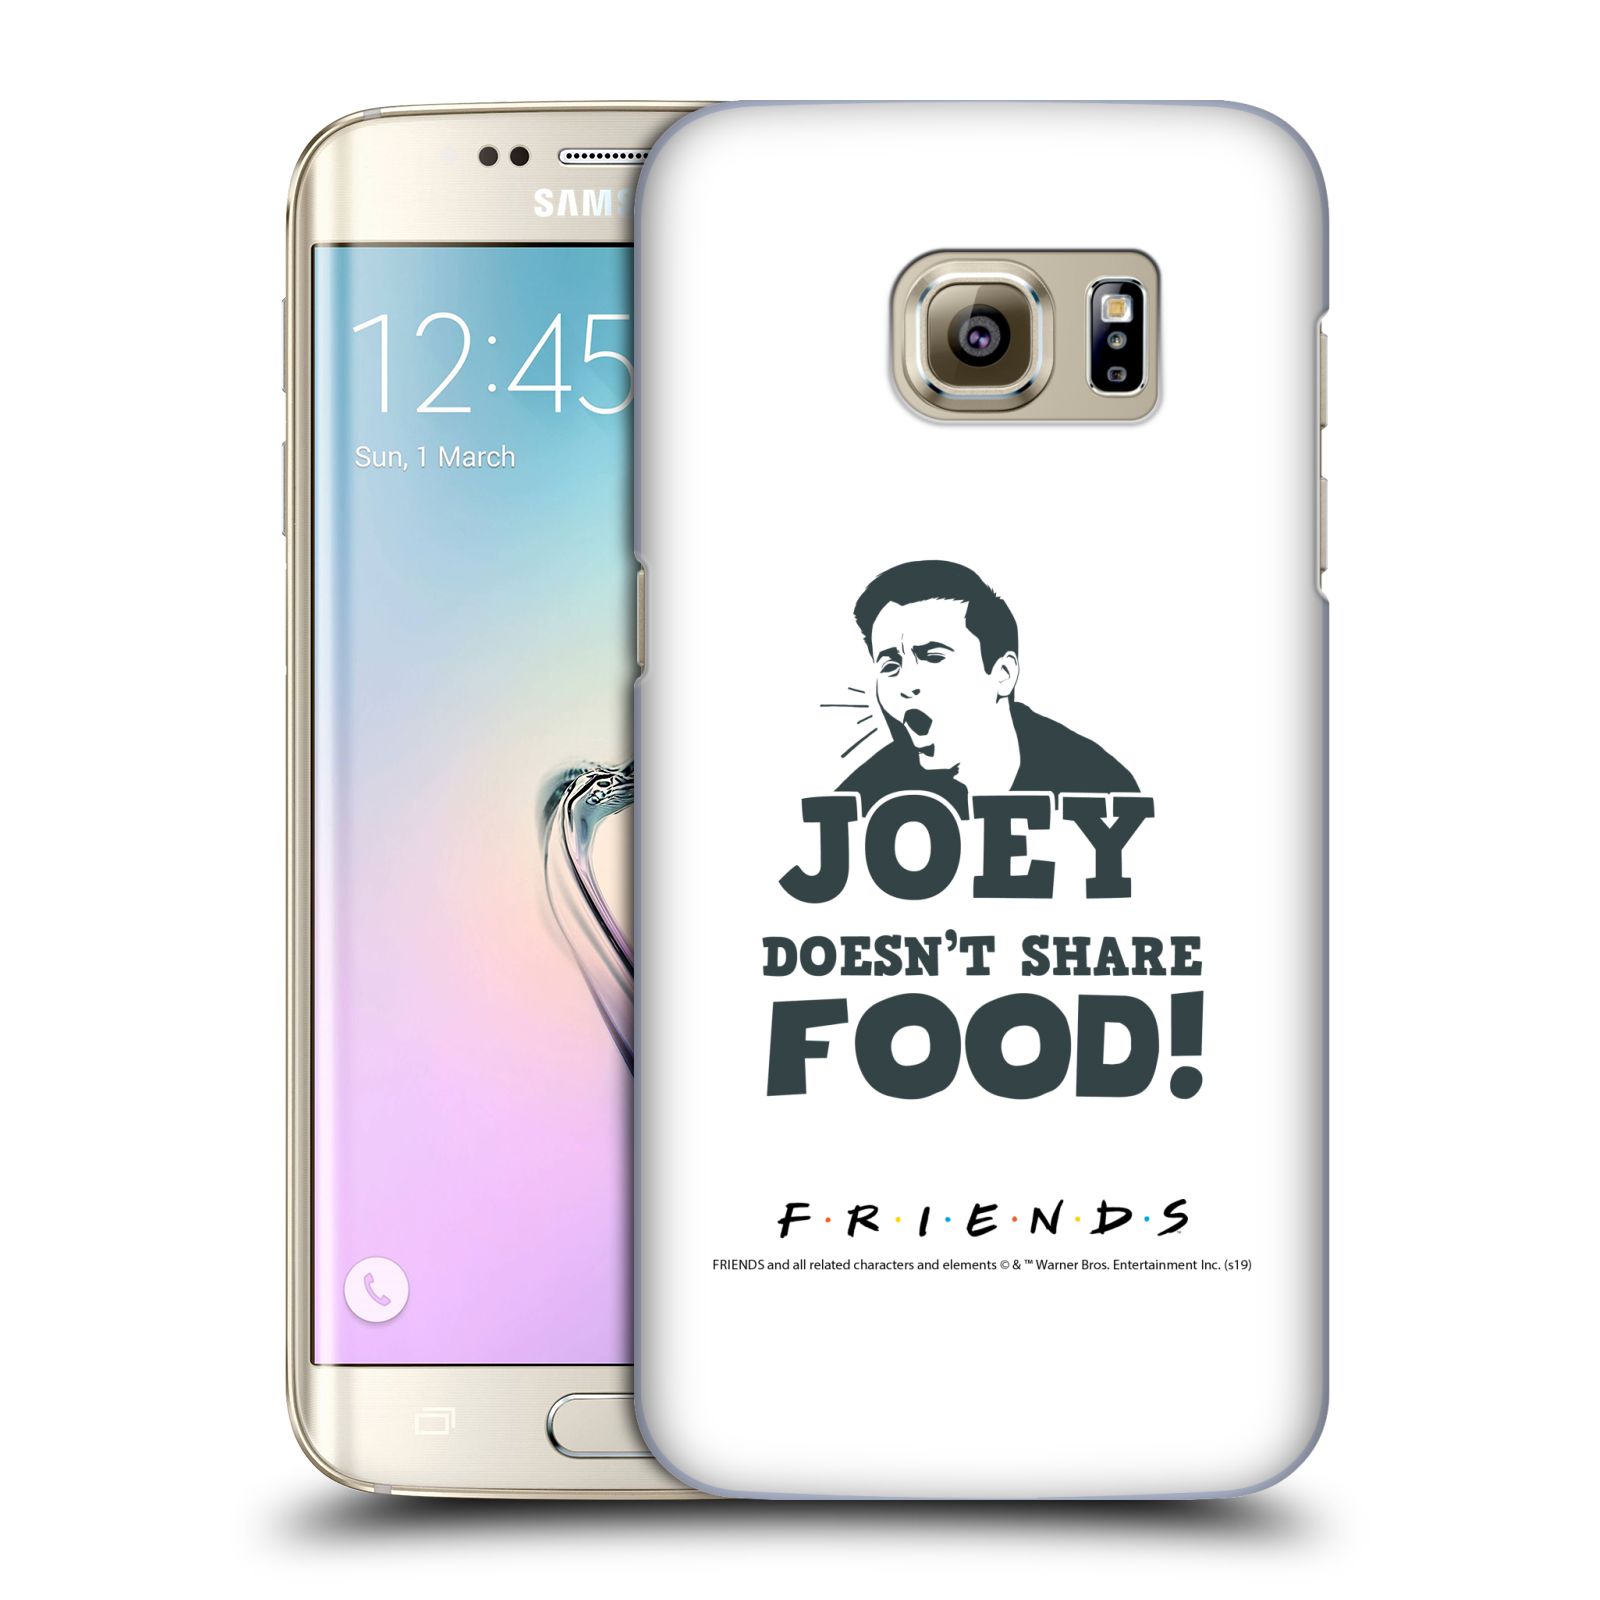 Pouzdro na mobil Samsung Galaxy S7 EDGE - HEAD CASE - Seriál Přátelé - Joey se o jídlo nedělí